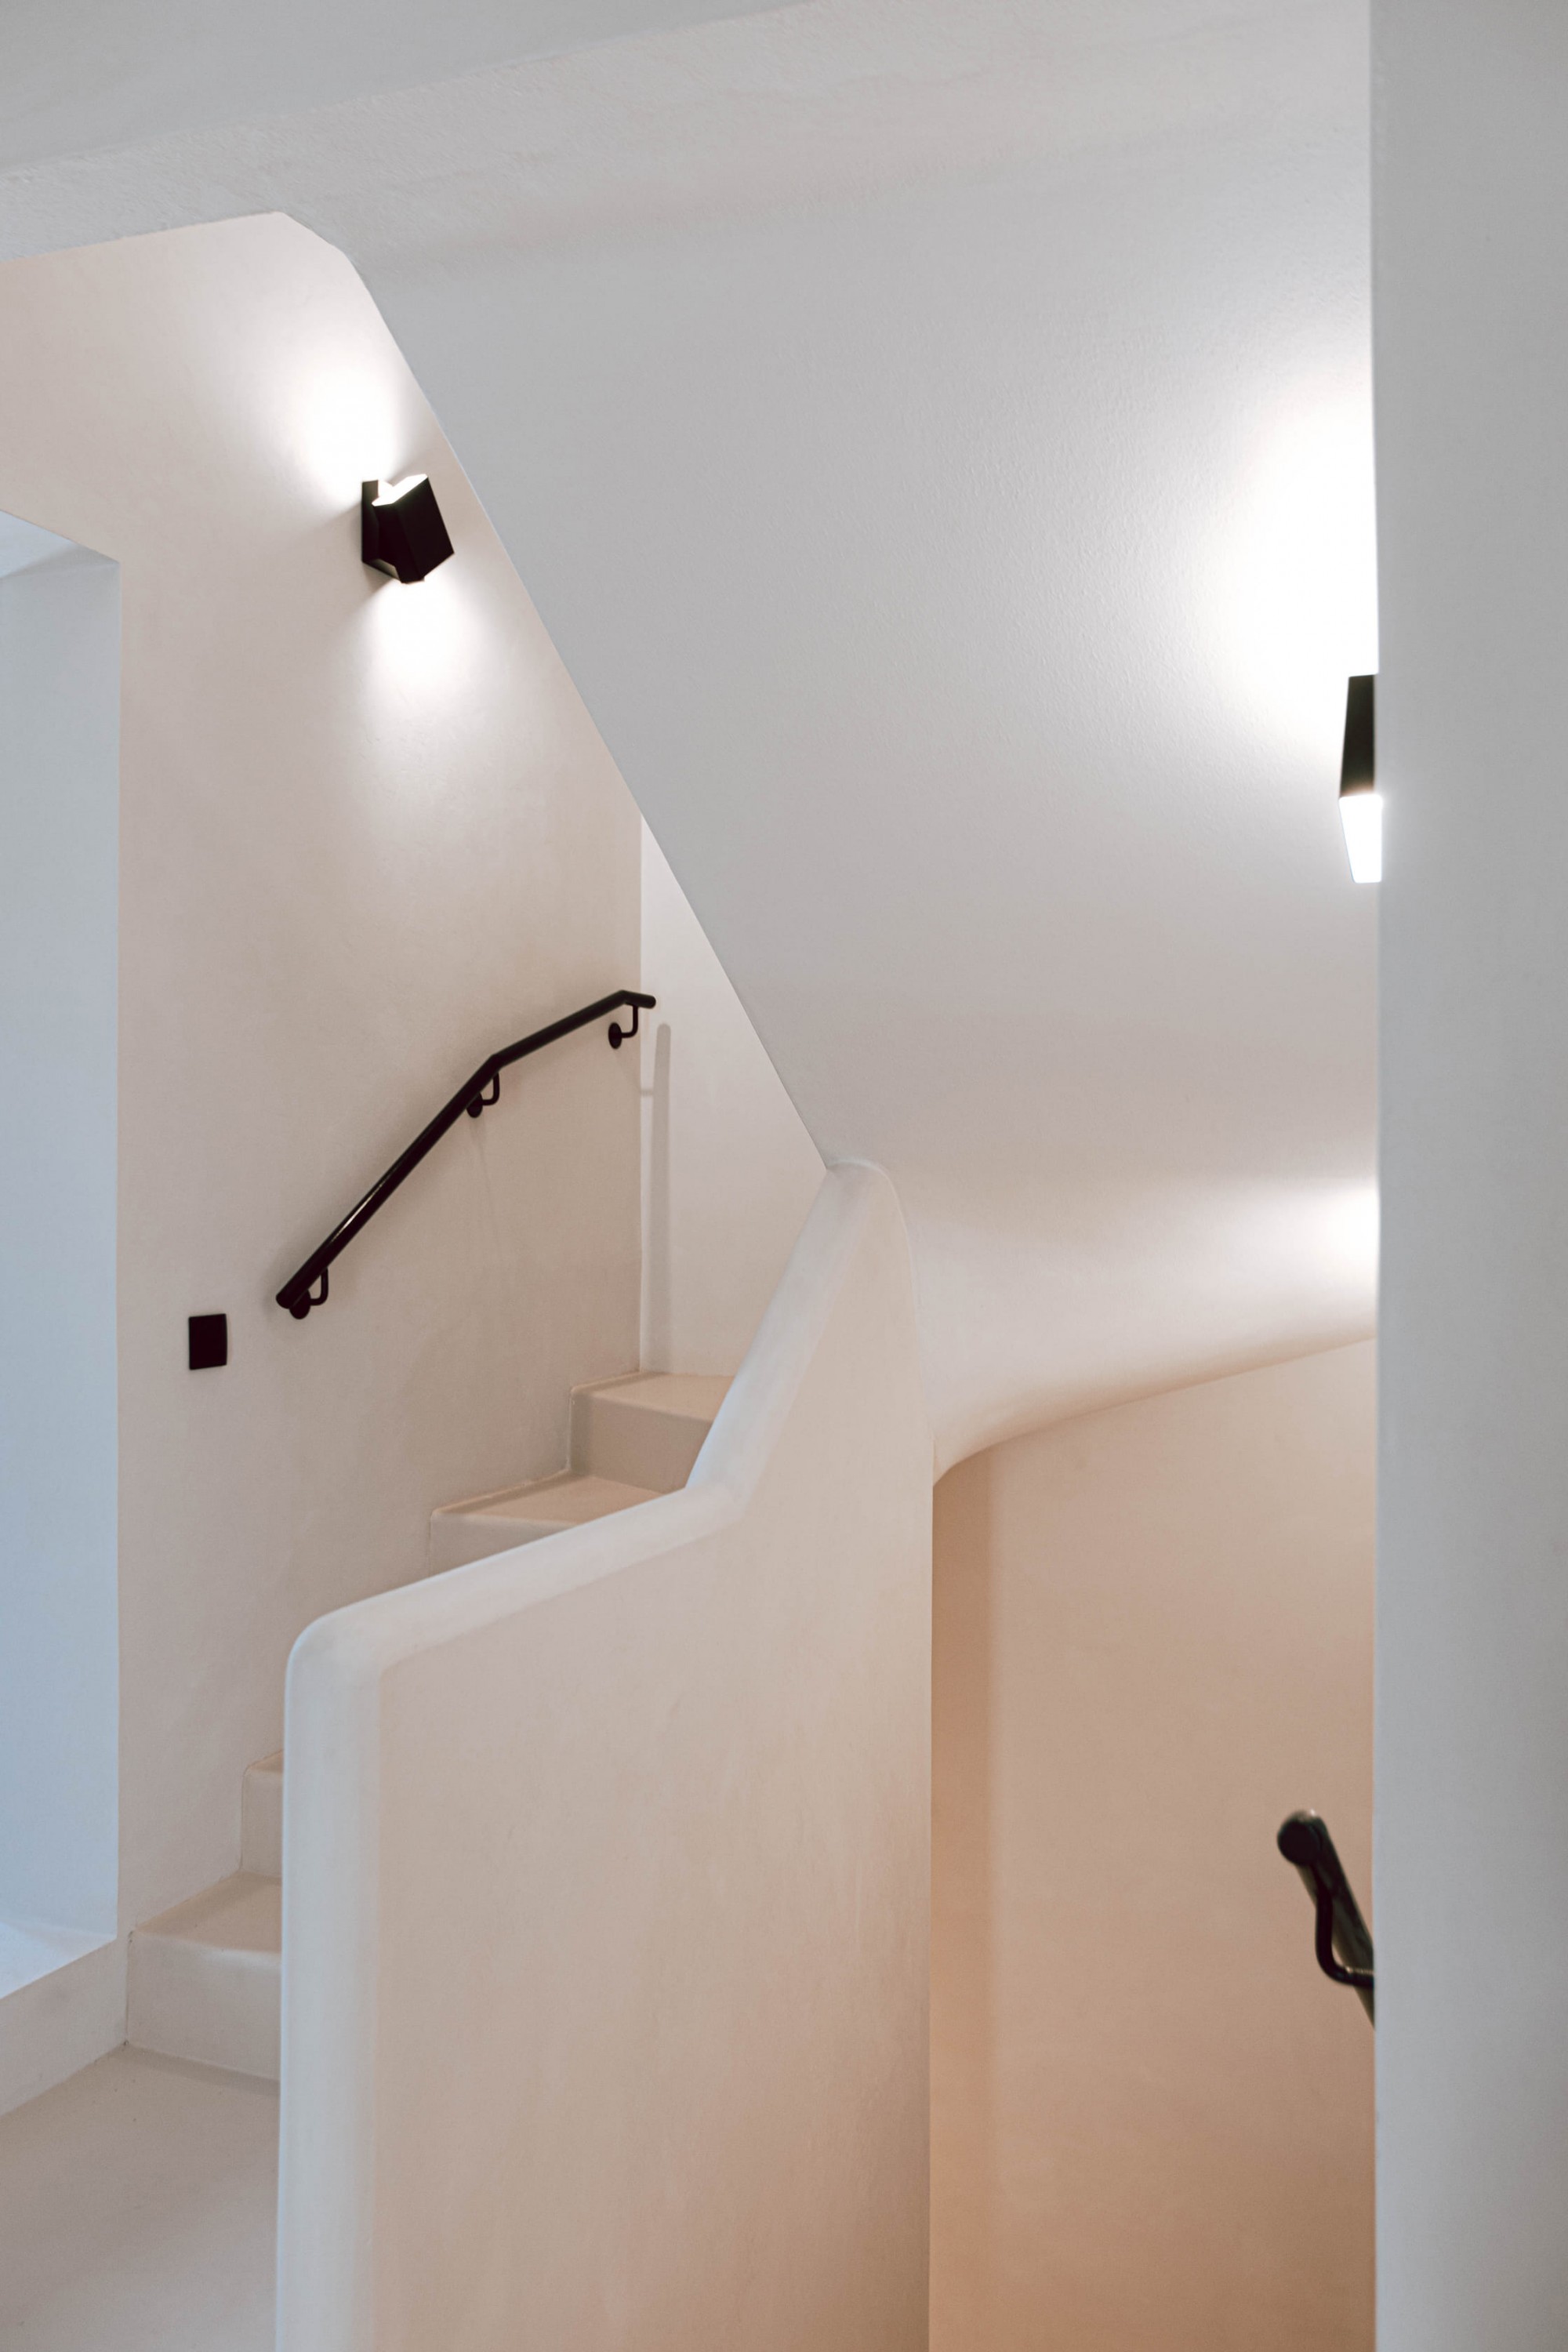 Escadas / Stairs